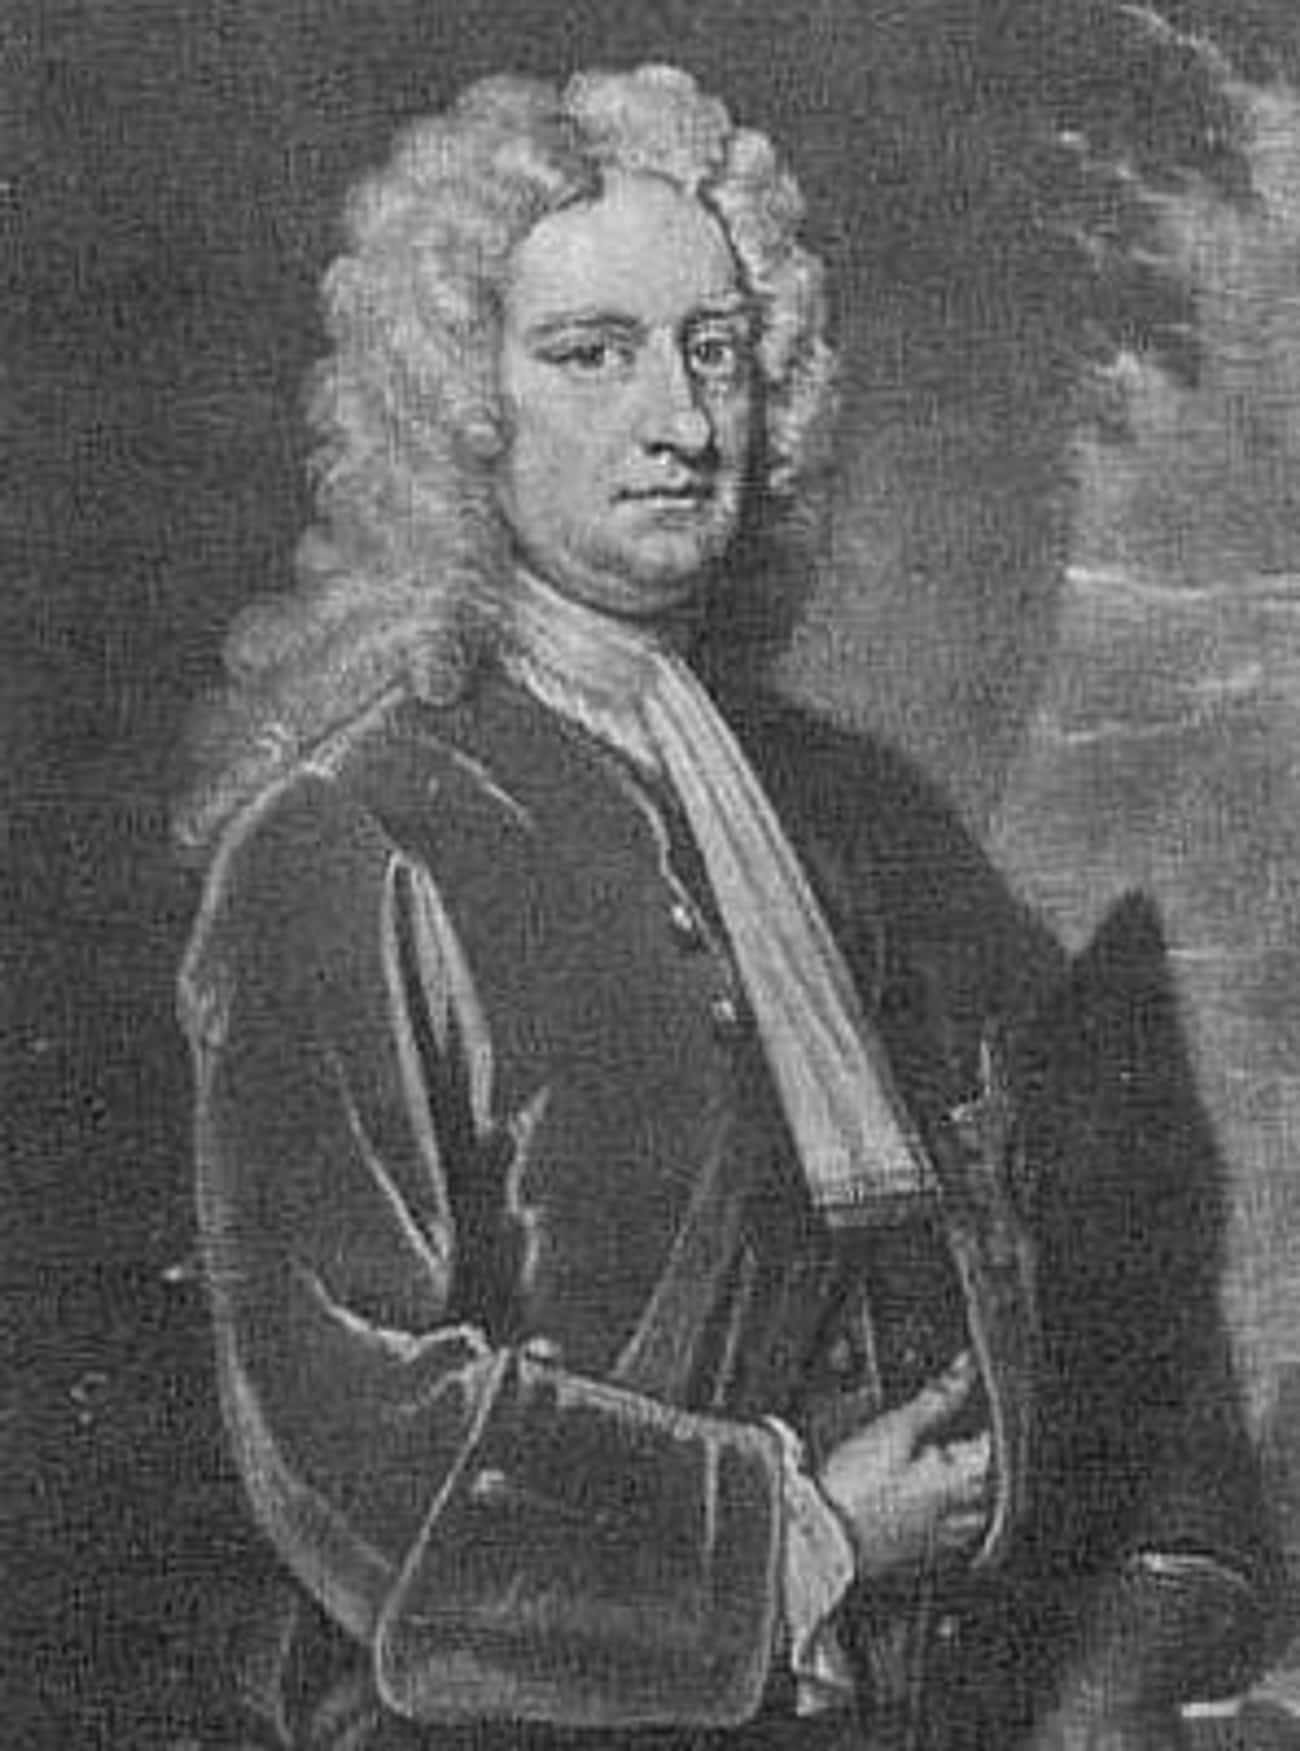 Charles Spencer, 3rd Earl of Sunderland